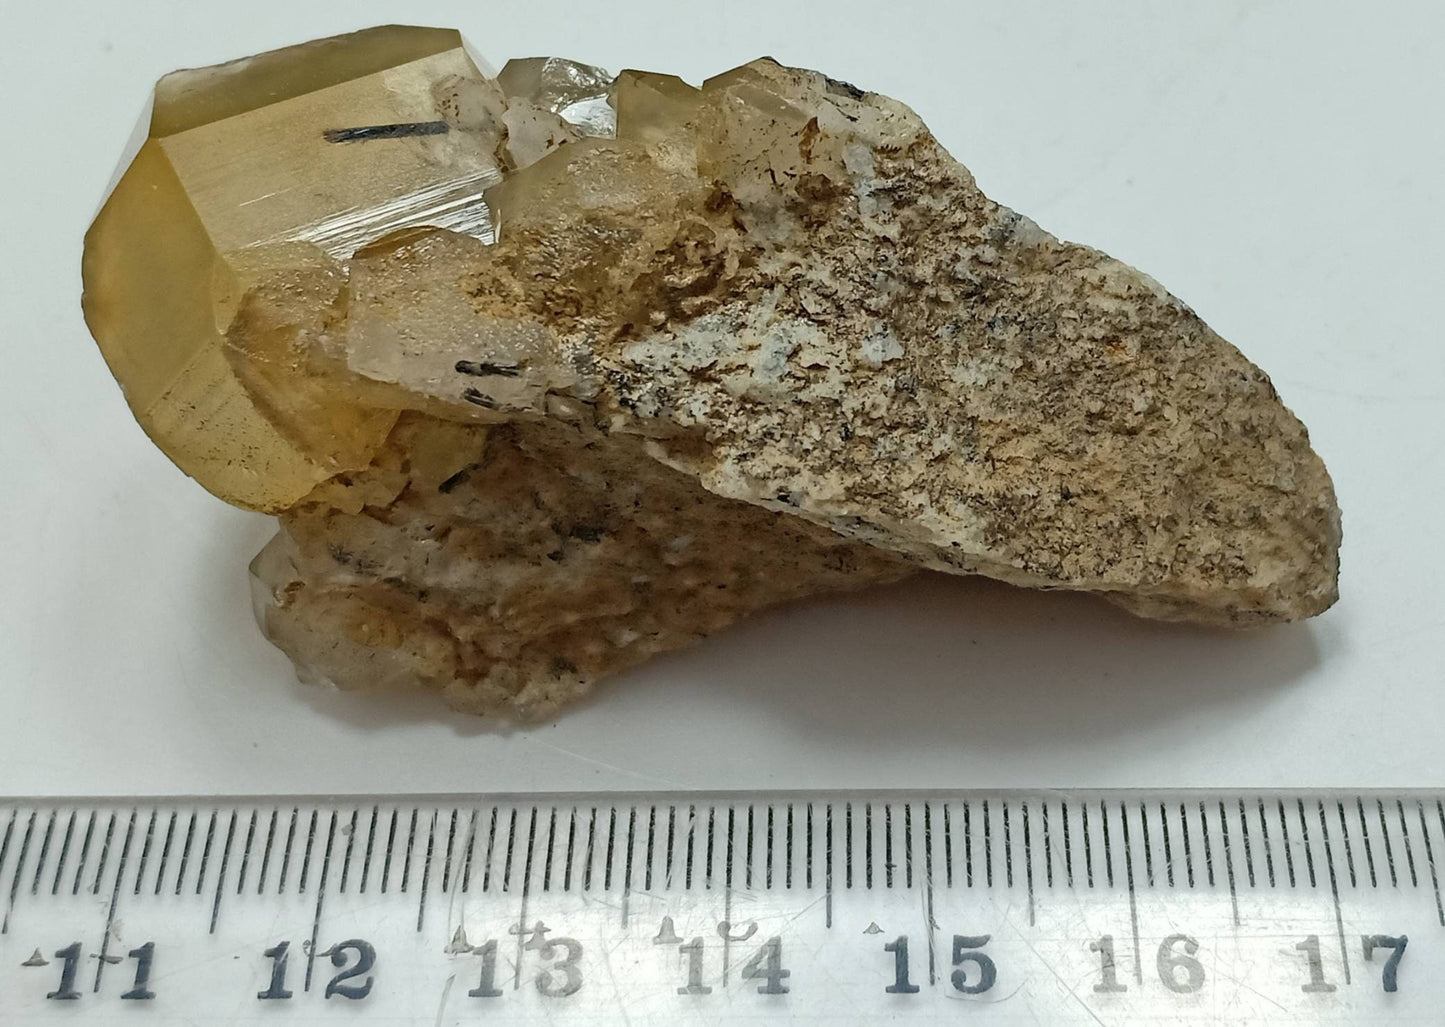 Astrophyllite Quartz Crystals cluster with aegirine inclusions on matrix of granite 53 grams